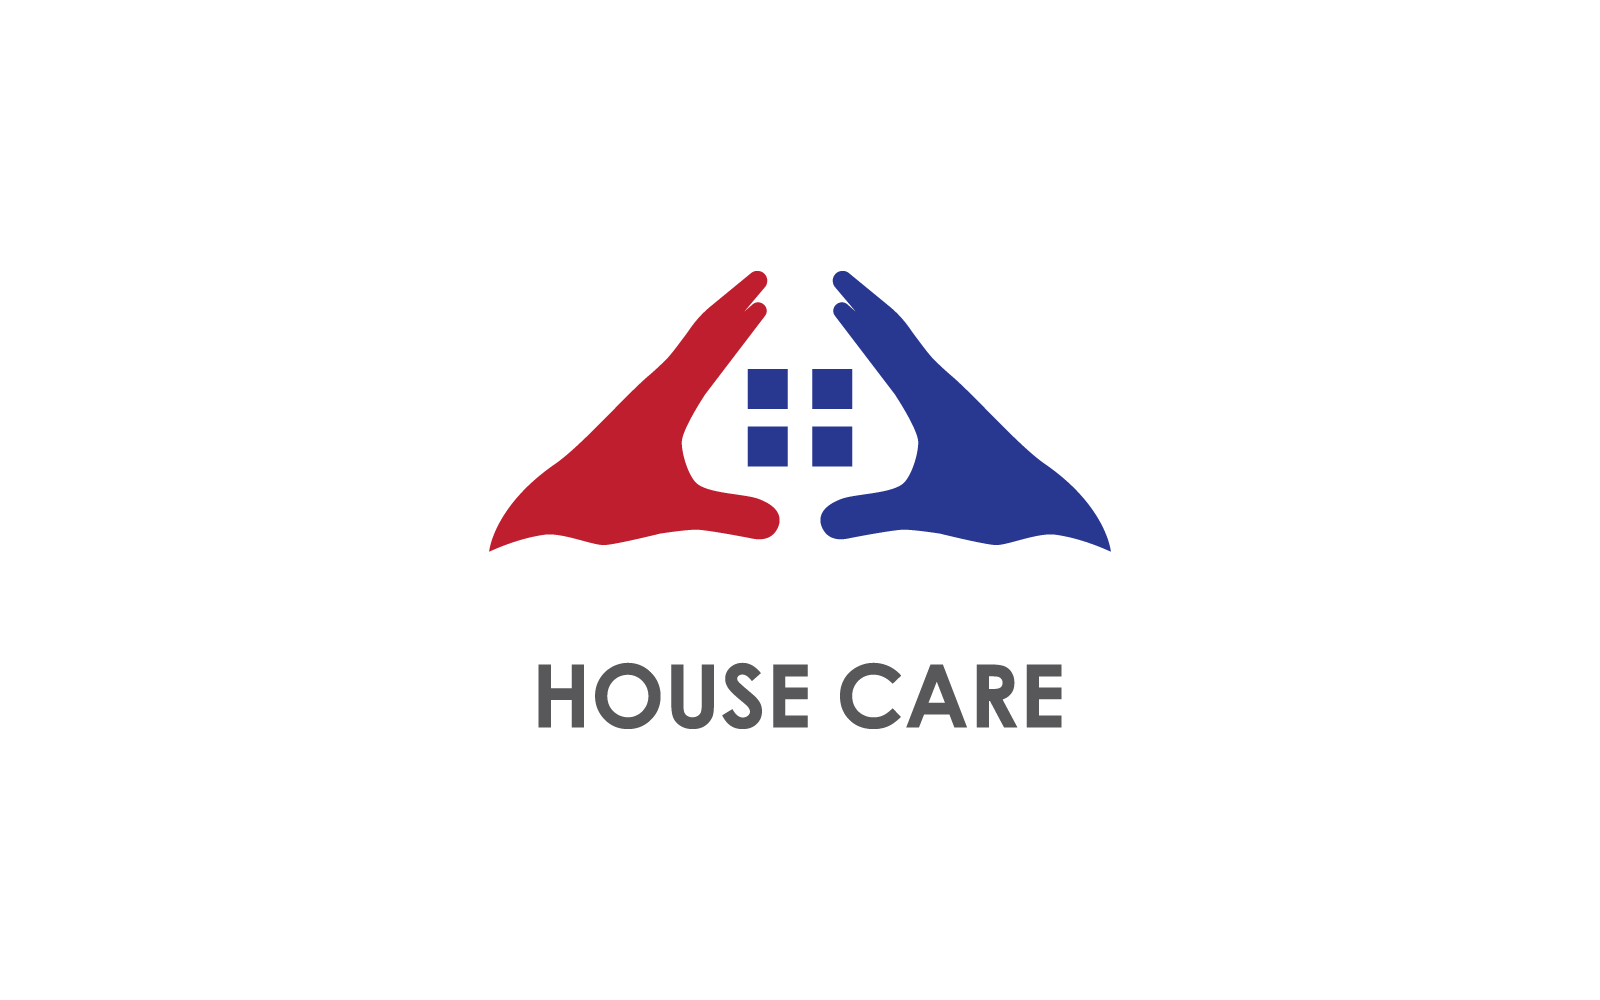 House care protection logo design vector template Logo Template